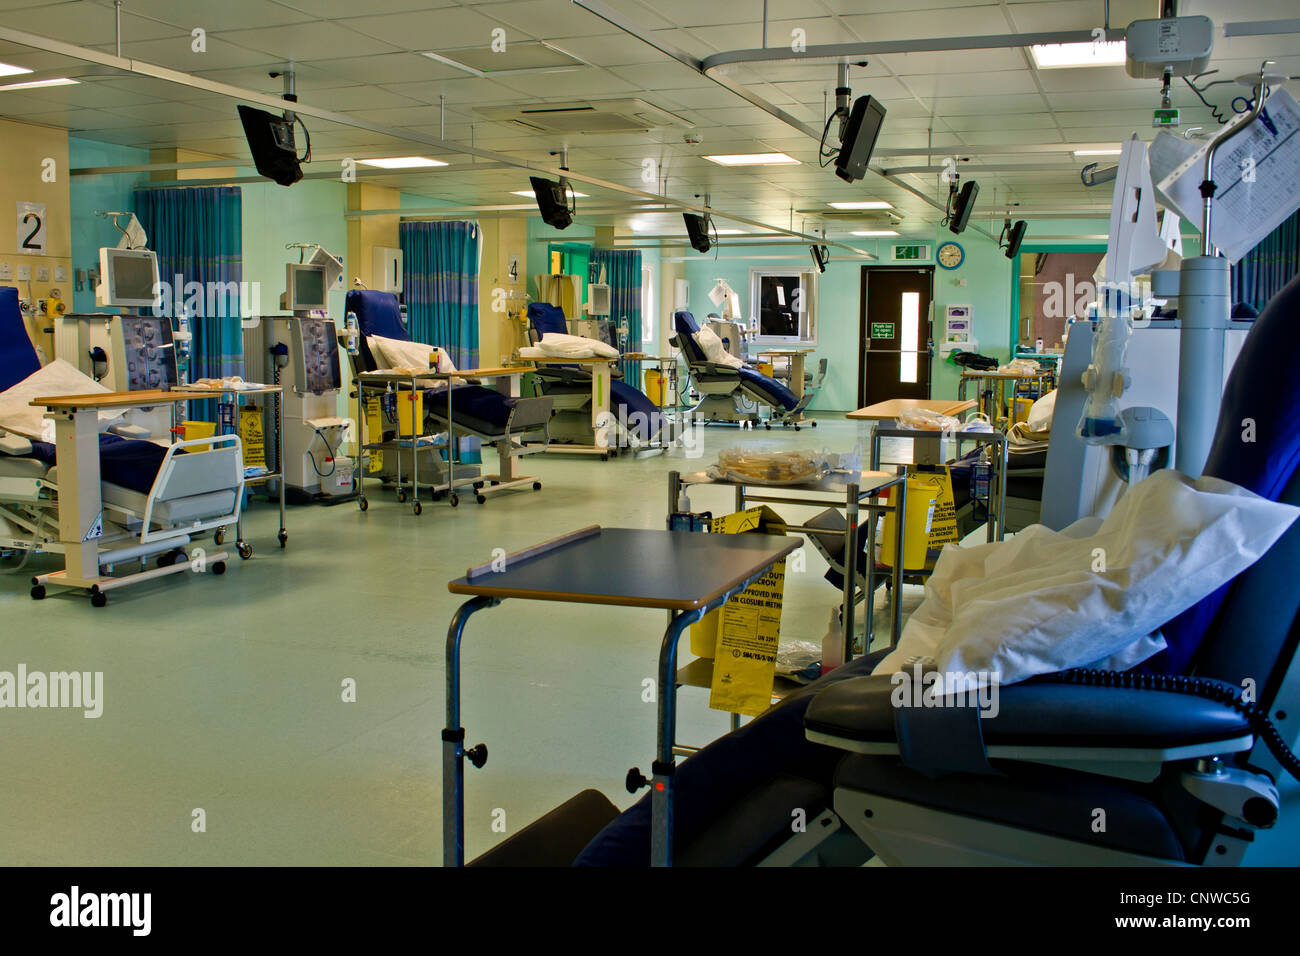 Moderno ospedale reparto renale / unità di dialisi. Foto Stock